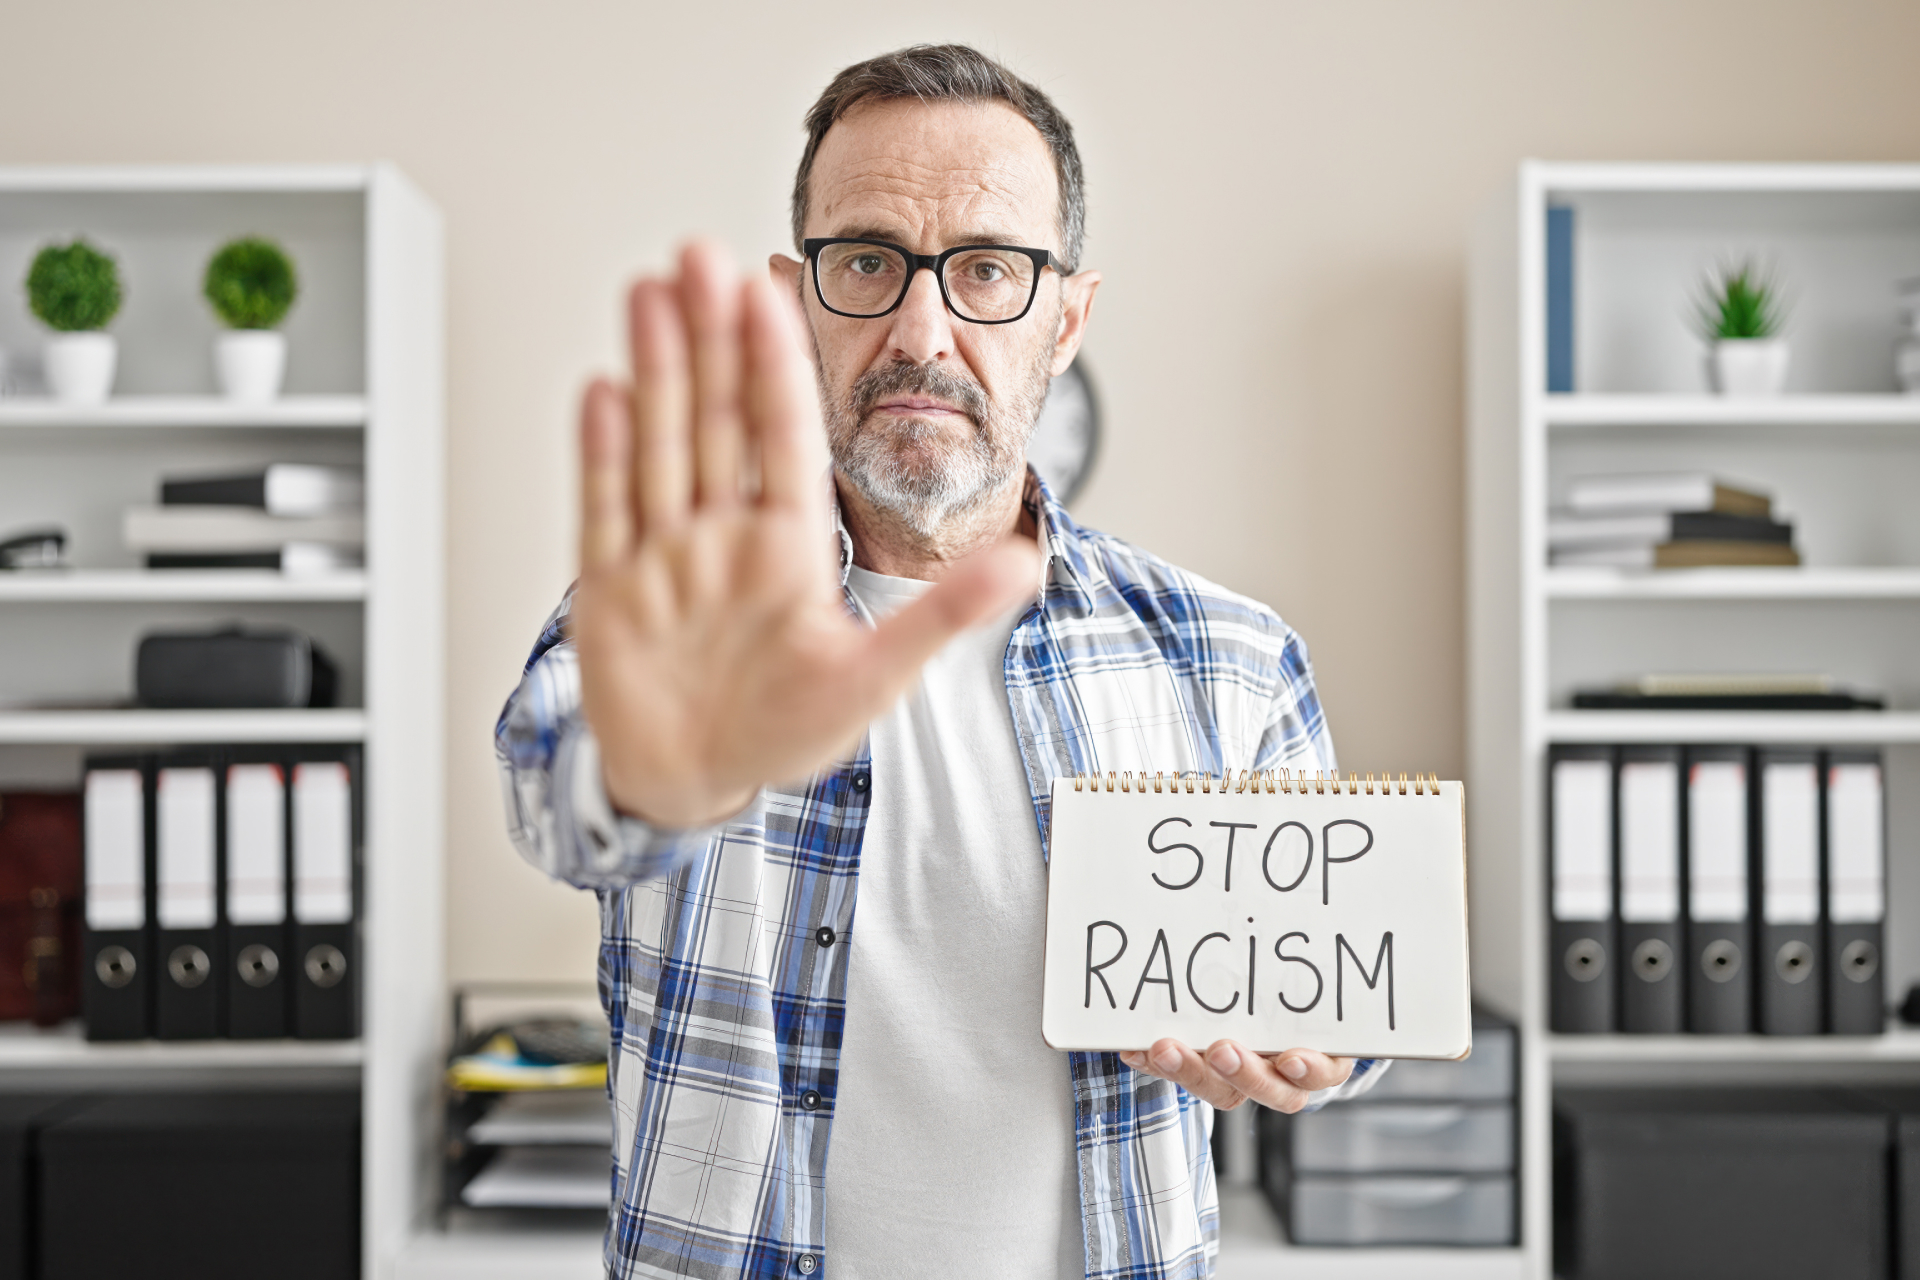 Mann trägt ein Schild mit "Stop Racism"